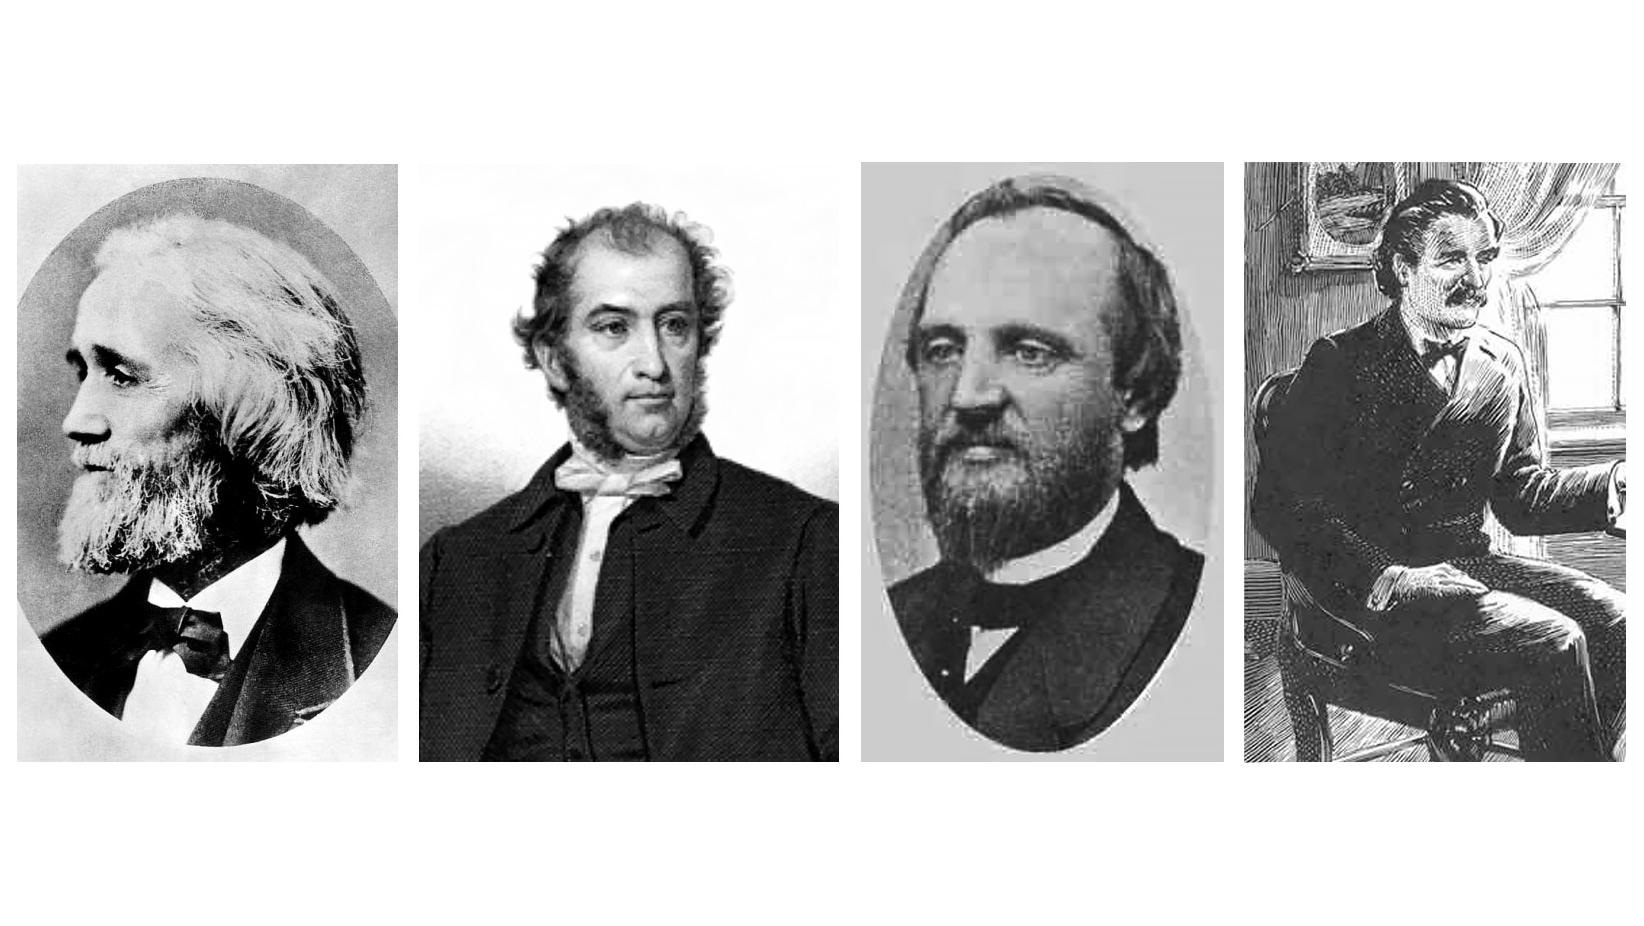 Na usporedne četiri crno-bijele fotografije prikazani su izumitelji prvog pisaćeg stroja, Christopher Sholes, Samuel Soule i Carlos Glidden te Mark Twain, prvi pisac koji je pisao svoja djela na pisaćem stroju.